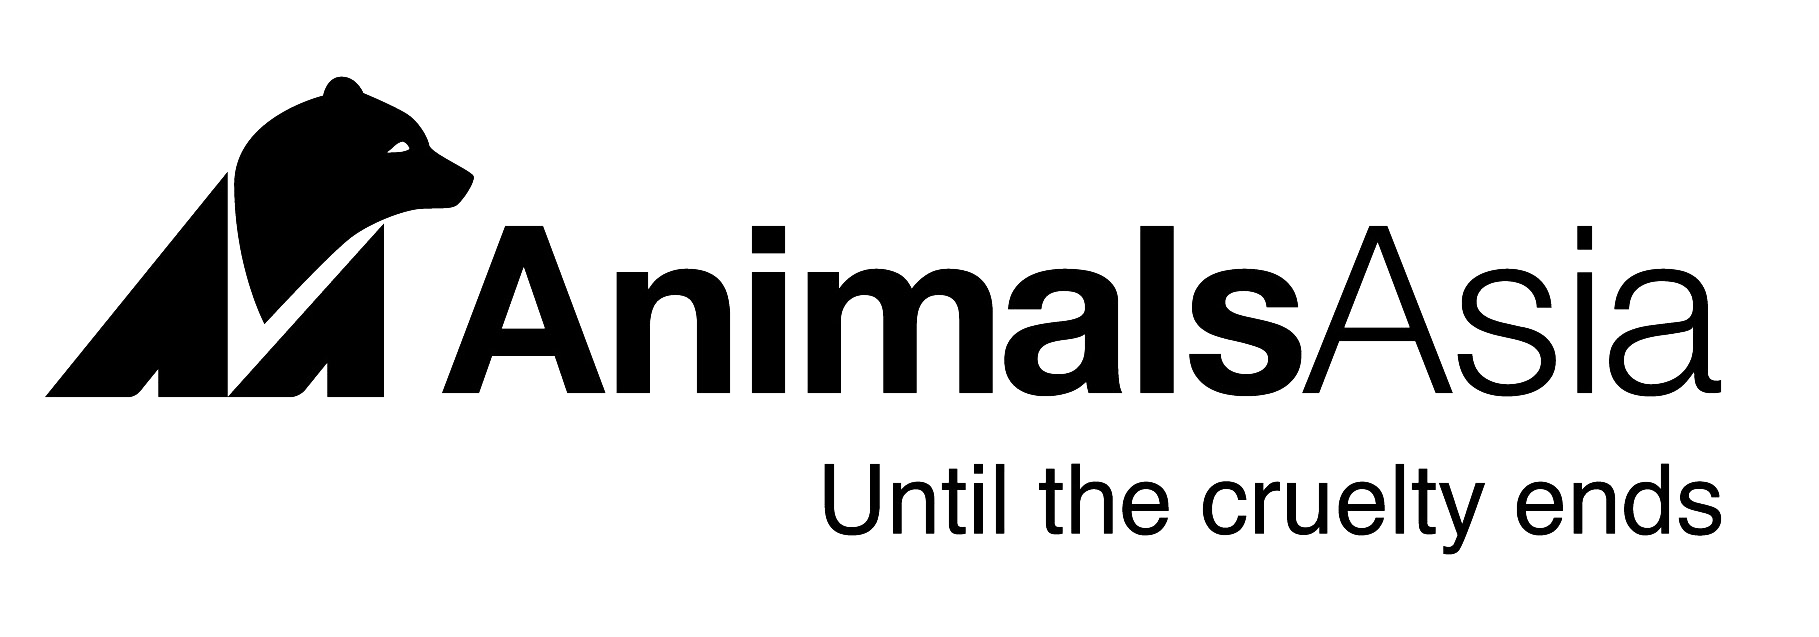 AnimalsAsia.png